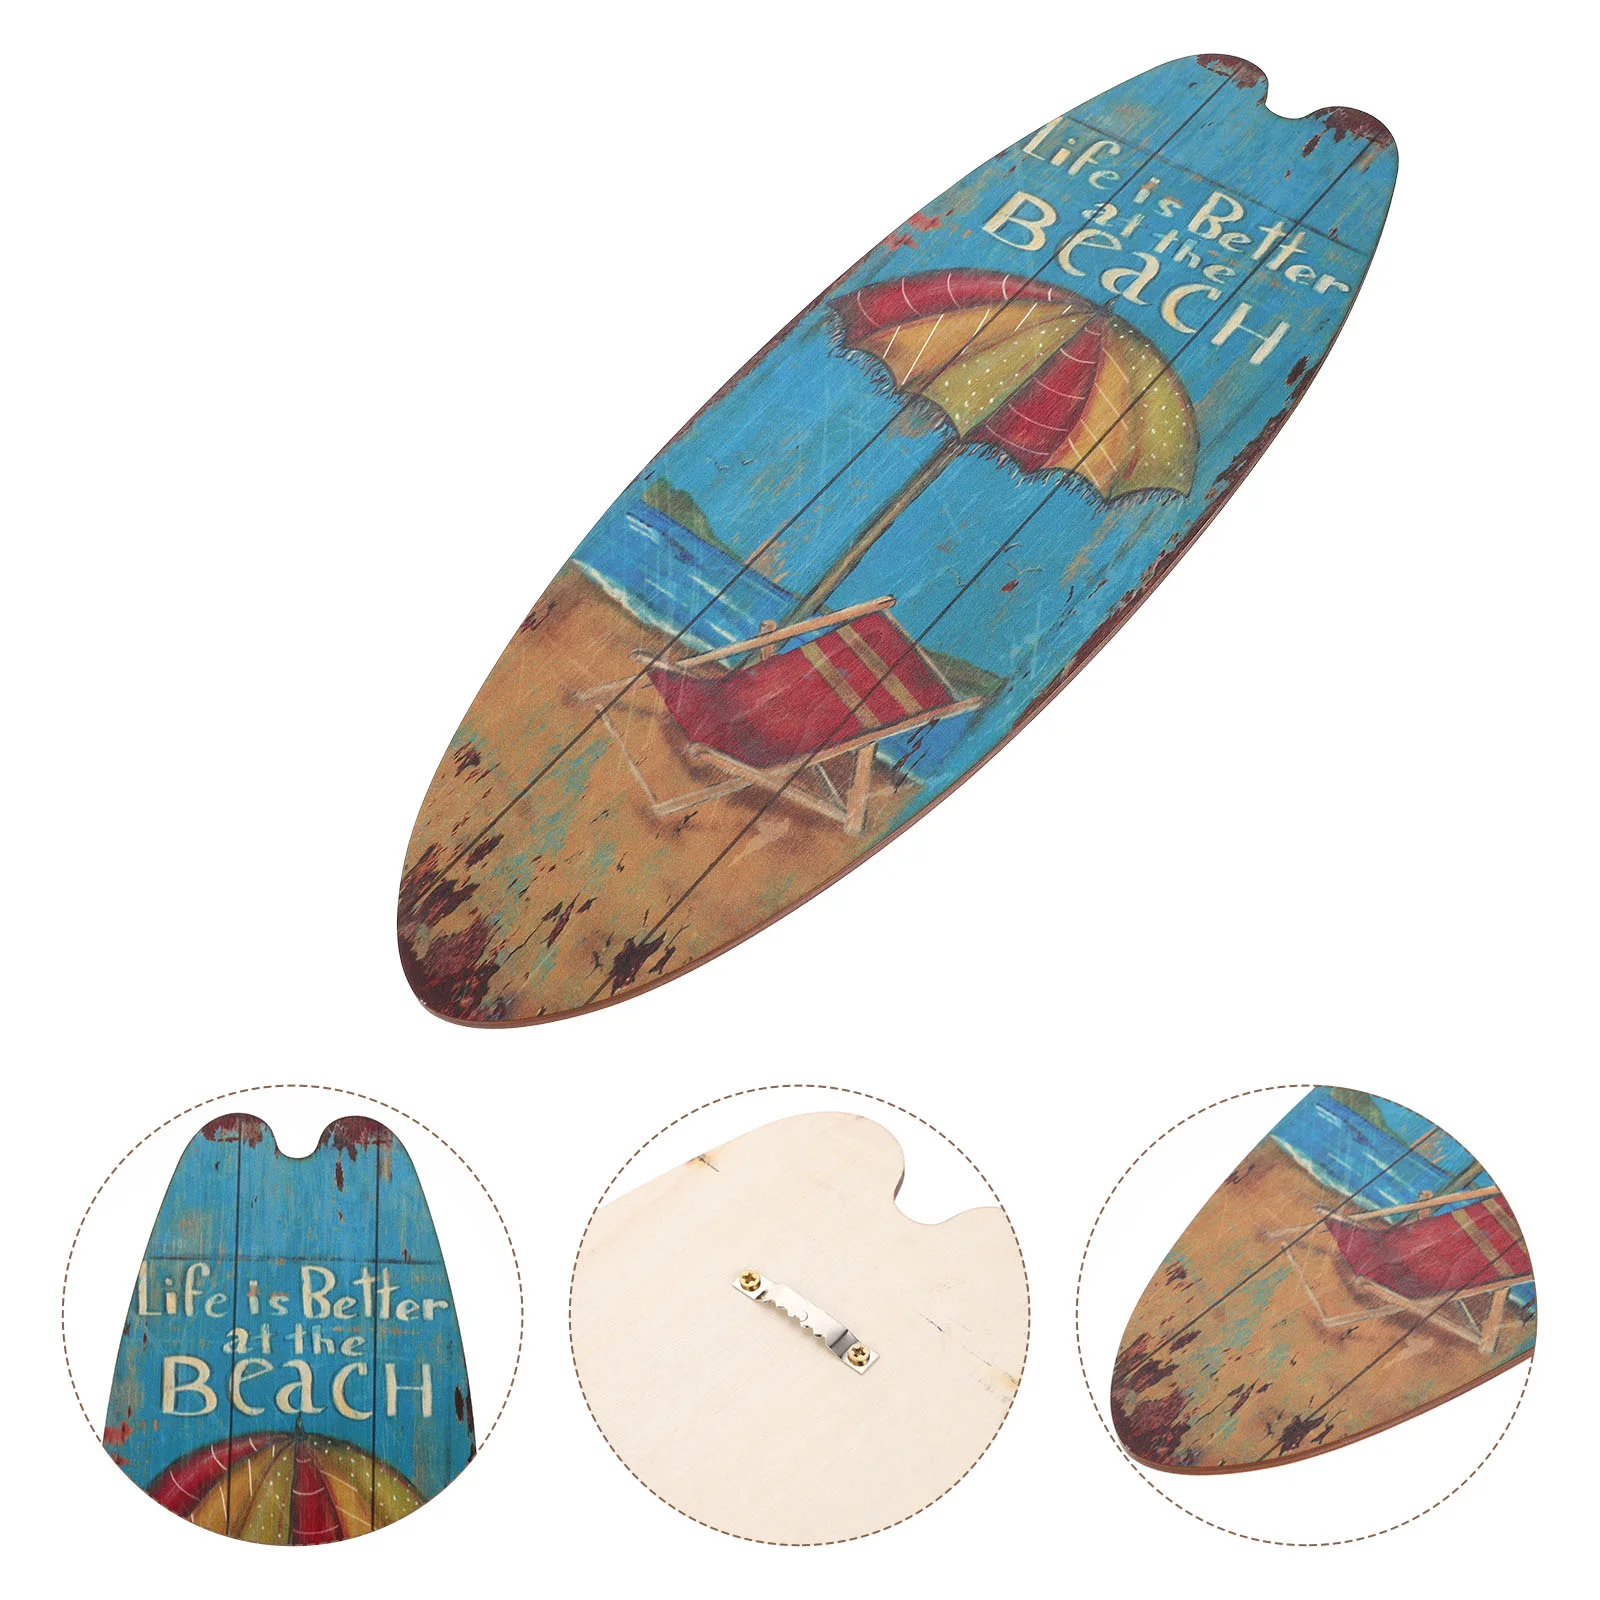 

Доска для серфинга, Настенный декор, Пляжная деревянная фотография, деревянные знаки, летняя доска для серфинга, украшения, прибрежная морская фотография